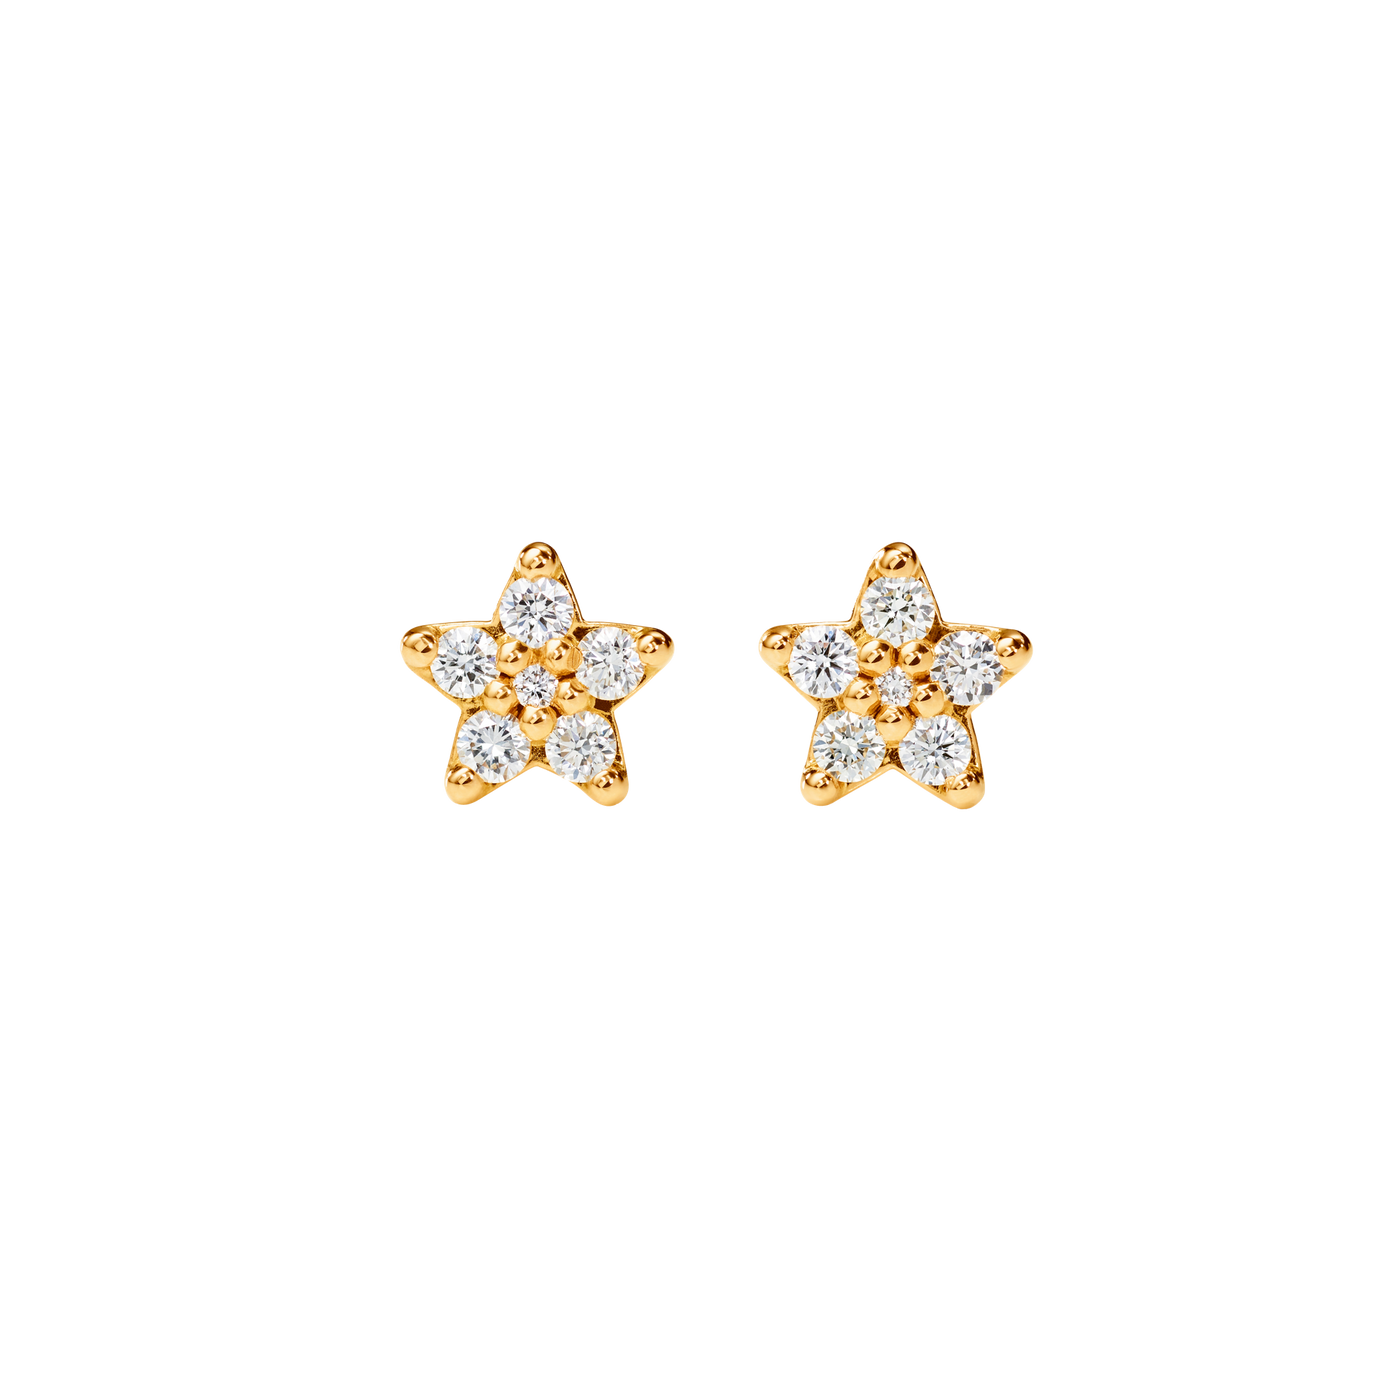 OLC Shootingstar Ohrstcker klein, Ohrstecker in Sternenform mit jeweils 6 Brillanten